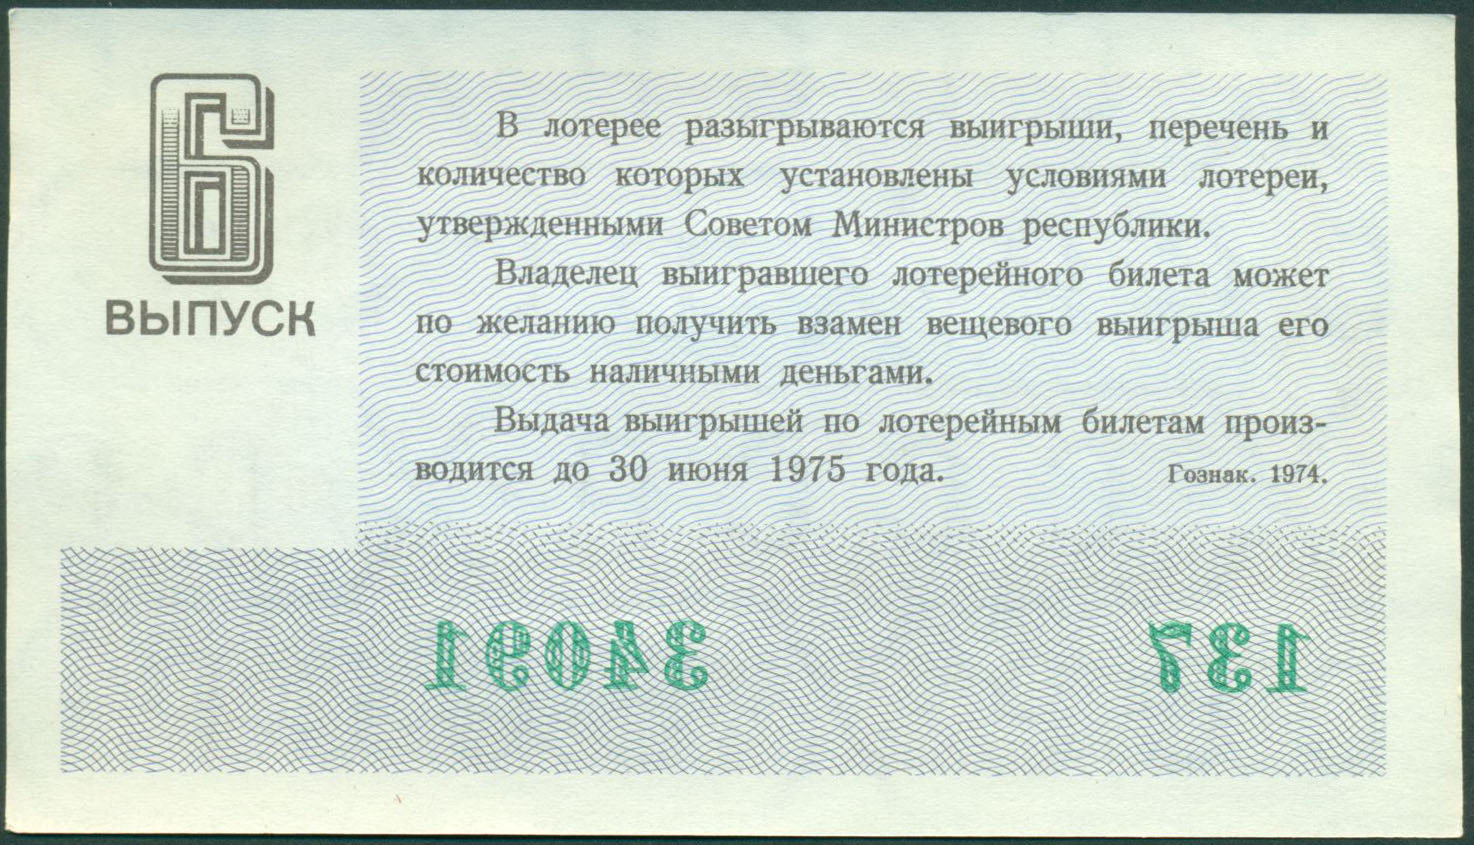 Анекдот про лотерейный билет. Лотерейные билеты шаблоны для печати. Лотерейный билет 1974 года. Советская лотерея. Притча про лотерейный билет.